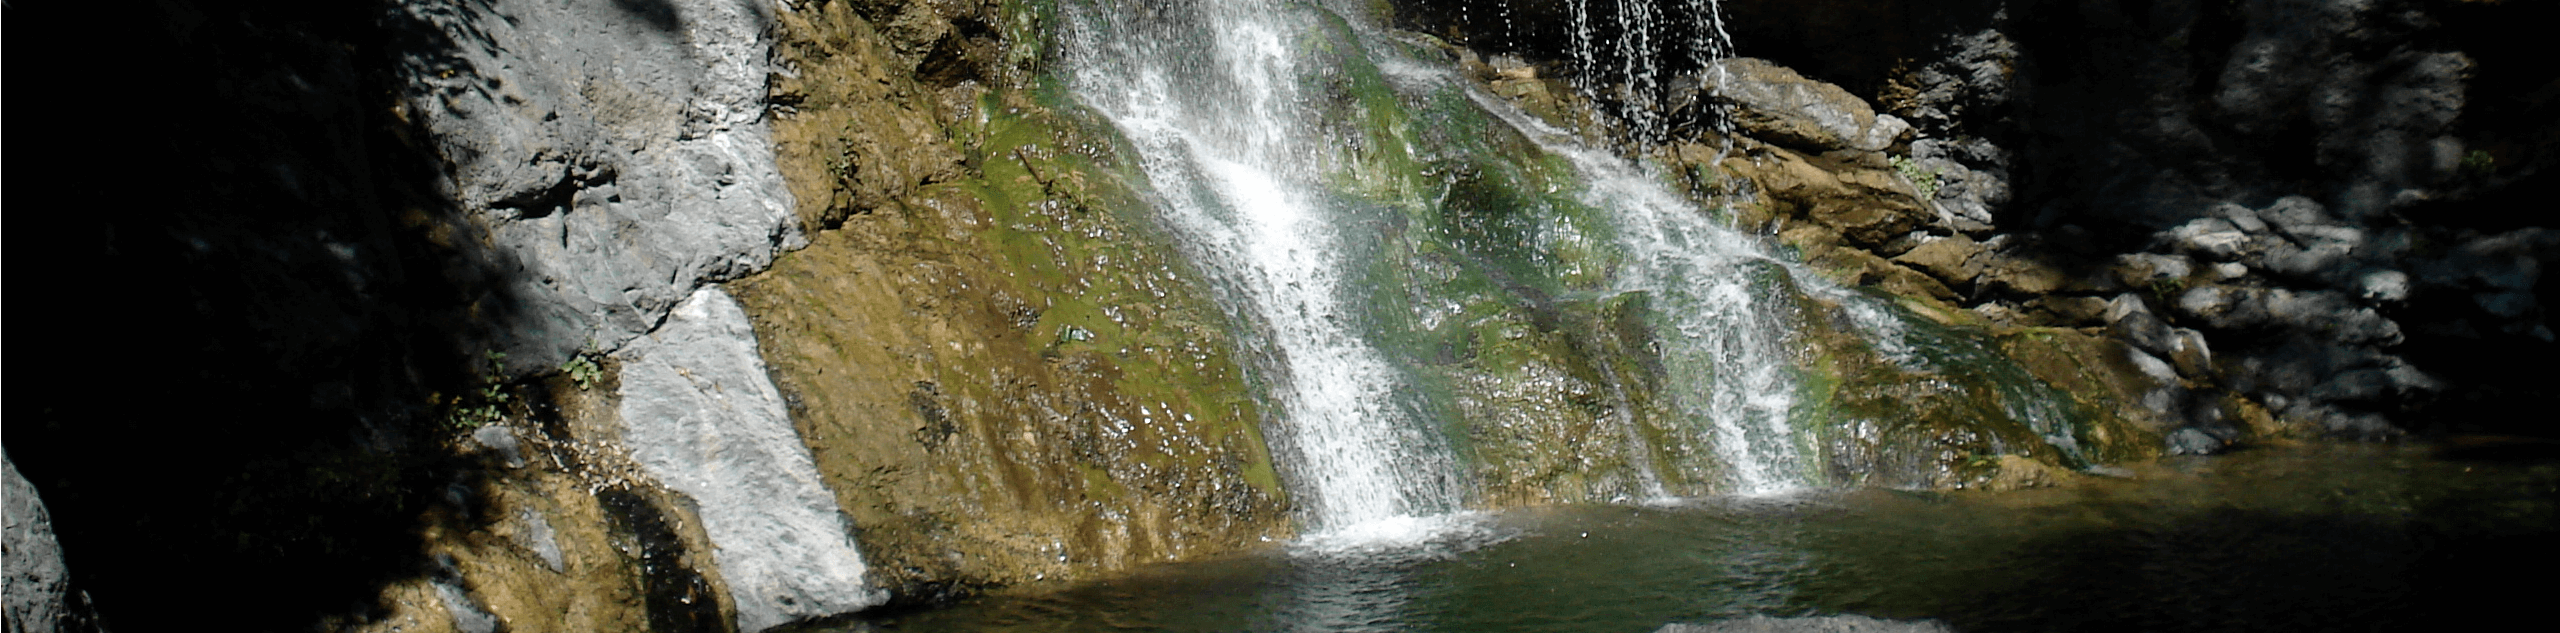 Salmon Creek Falls Hike